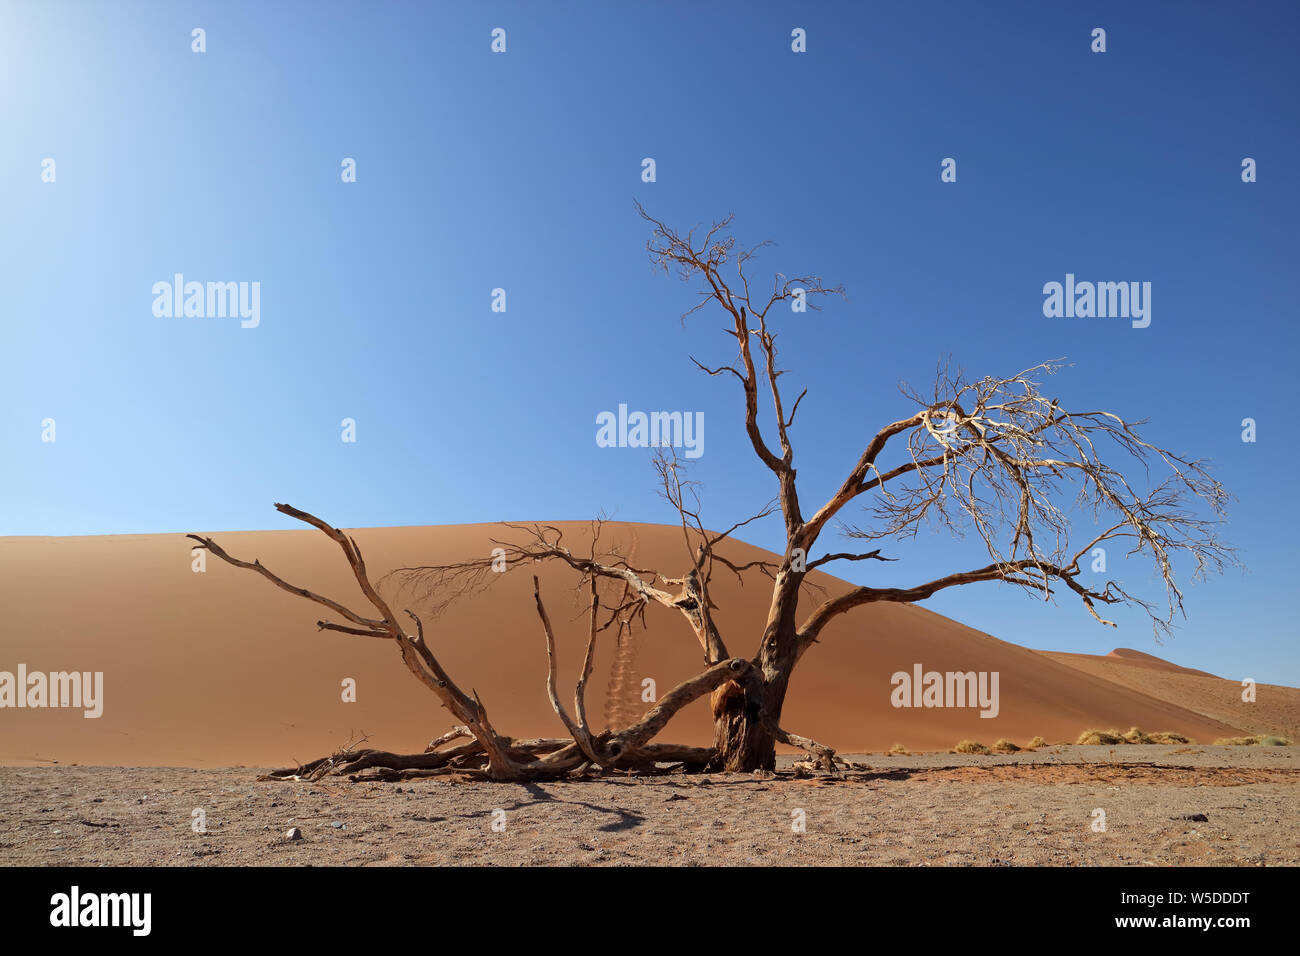 Paisaje desértico con árbol muerto y dunas de arena roja, Sossusvlei, Namibia Foto de stock